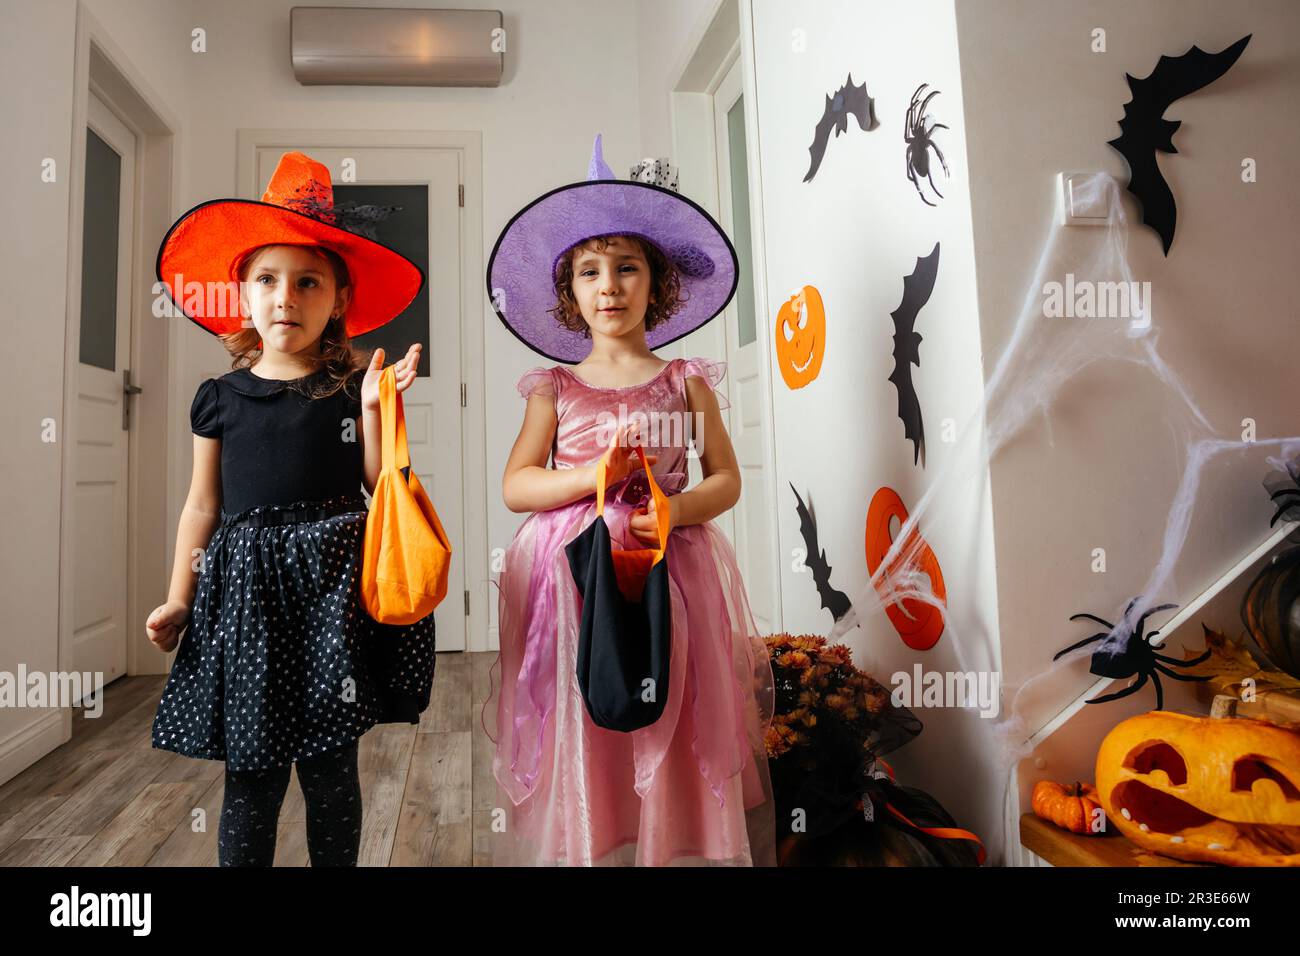 Petites filles sorcières attendant des gâteries d'halloween Banque D'Images